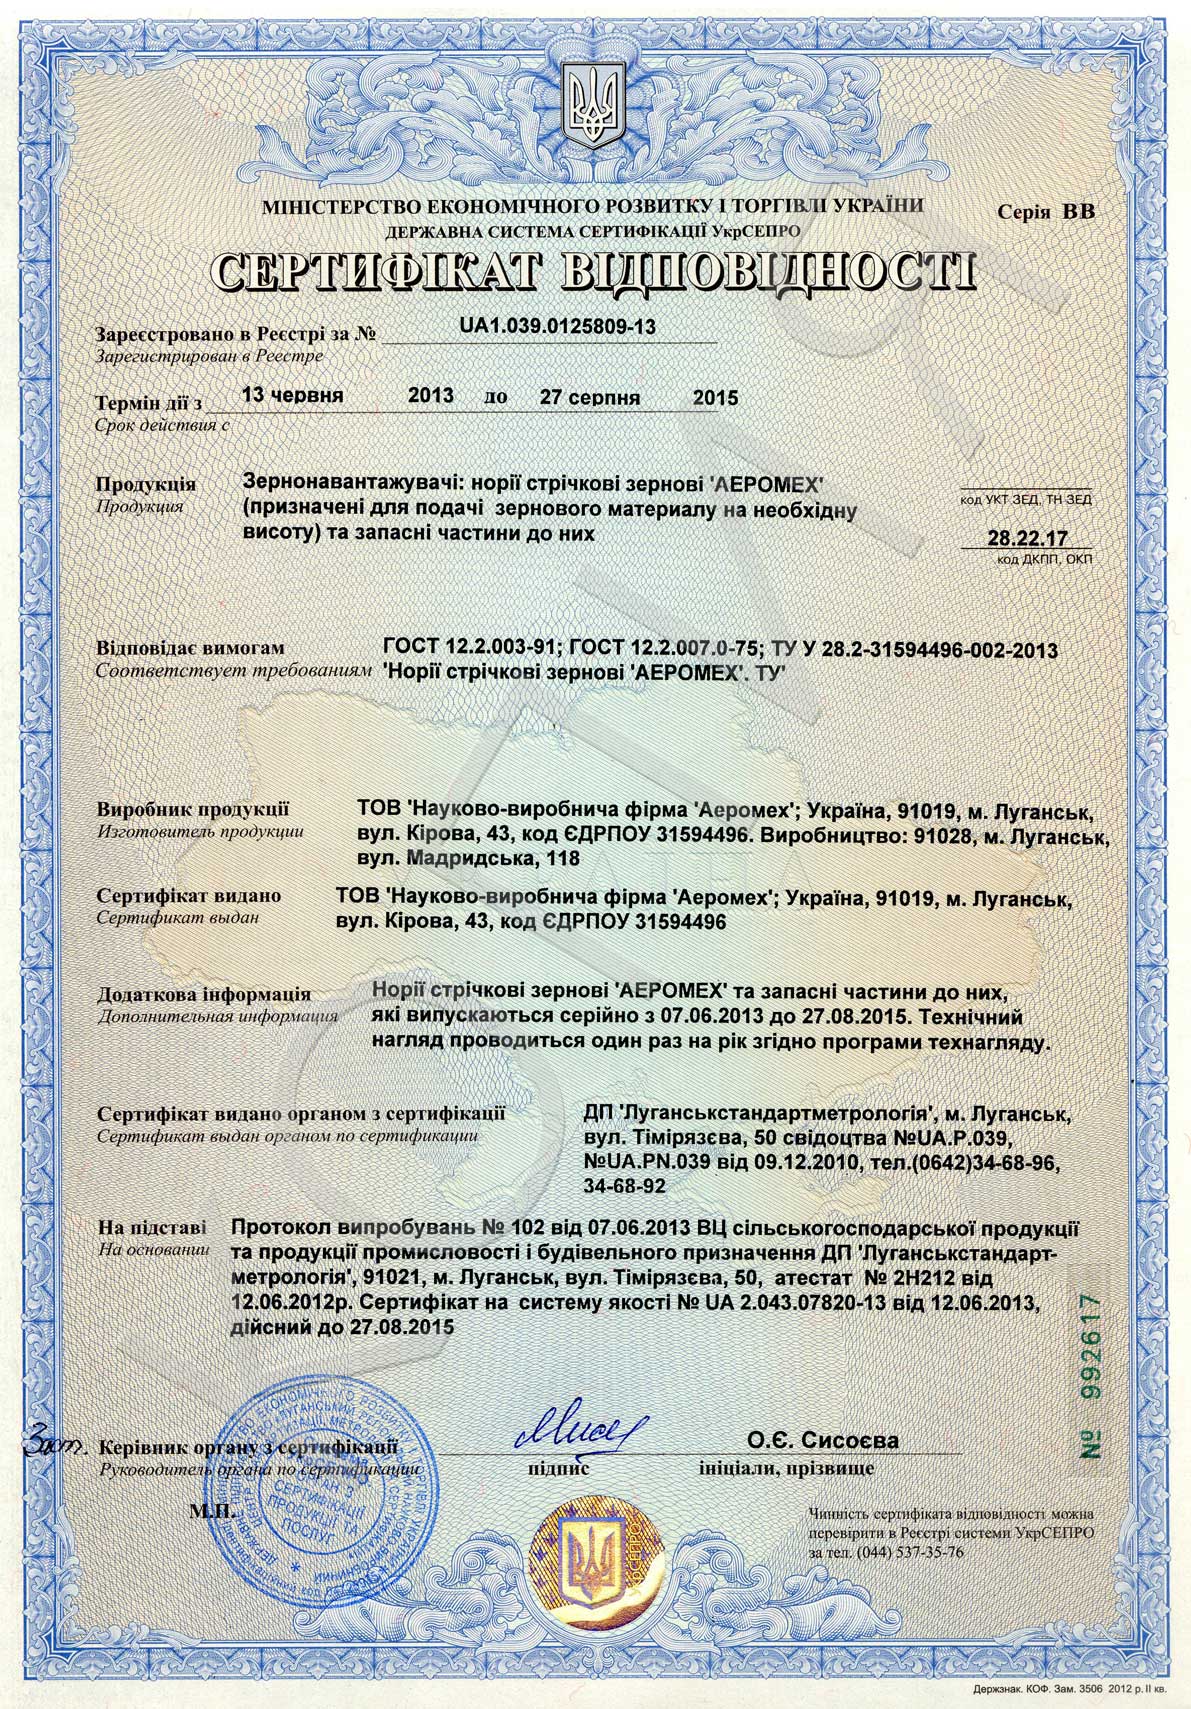 Сертифікат норії стрічкові зернові